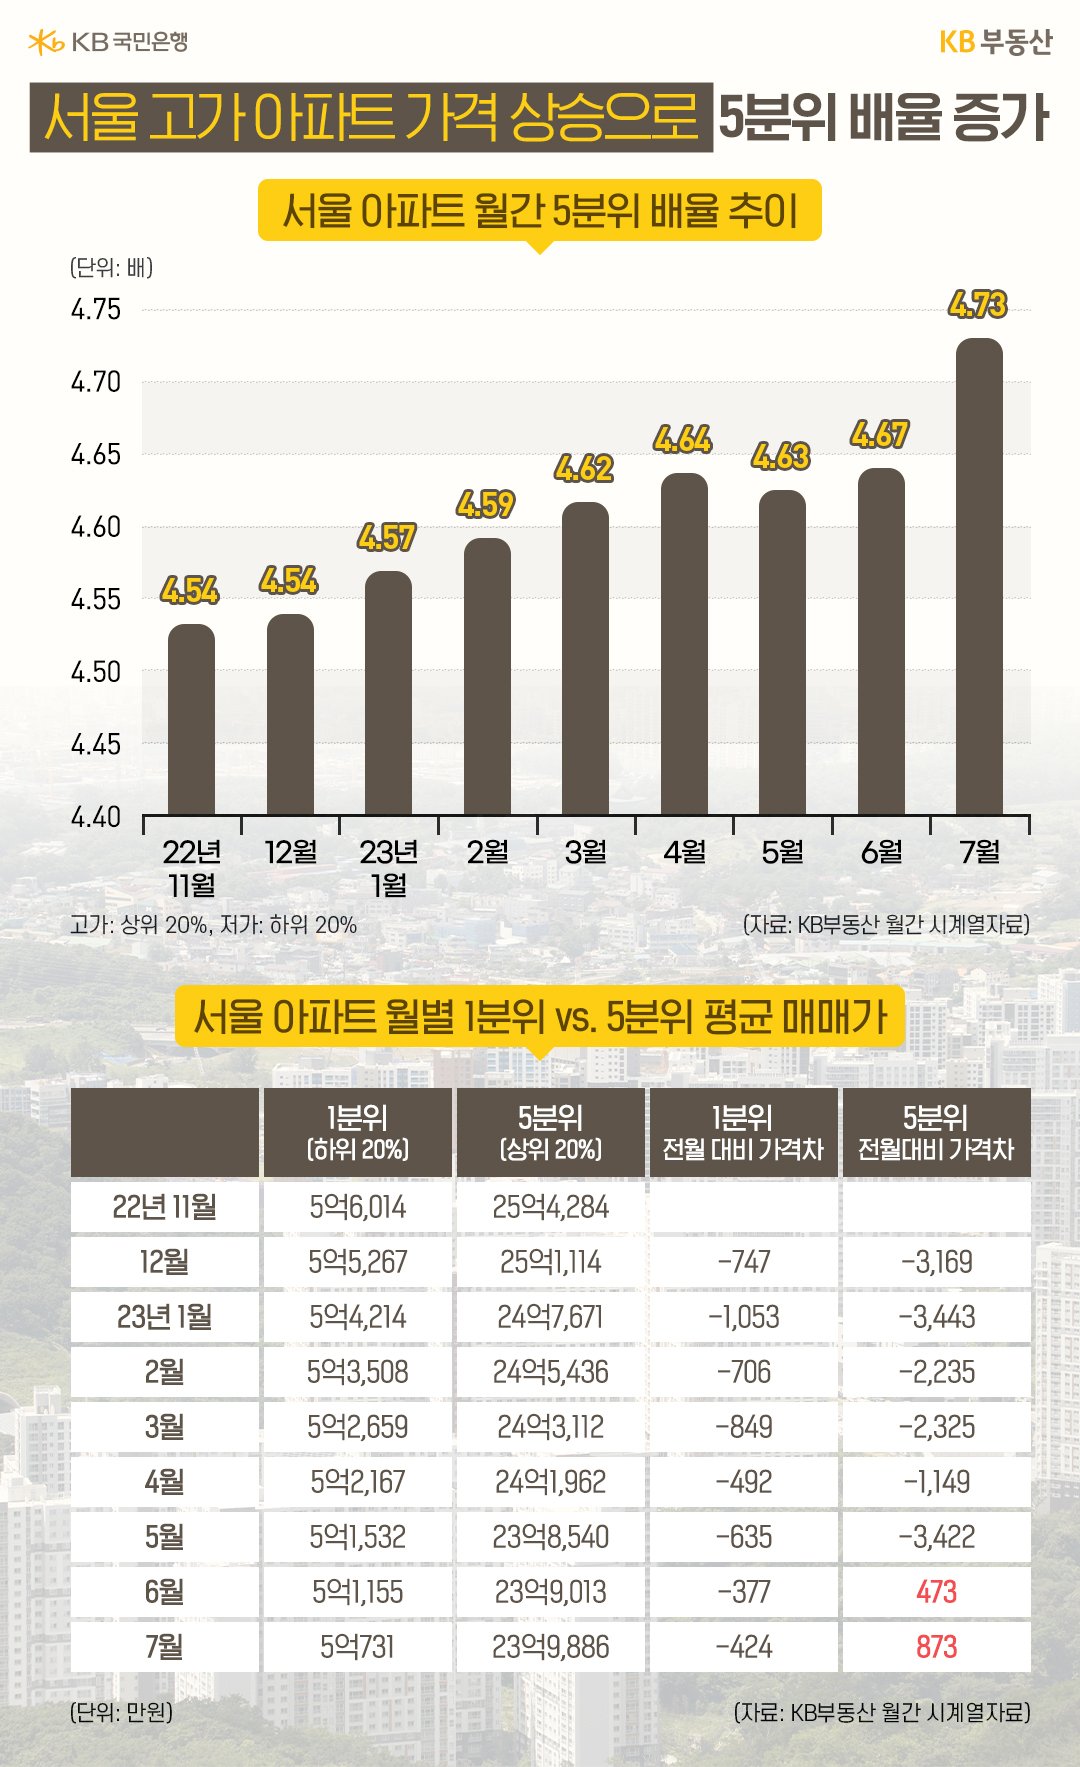 '서울 아파트 월간 5분위 배율 추이' 를 보여주는 그래프. '서울 아파트 월별 1분위' 와 '5분위 평균 매매가' 를 보여주는 표.